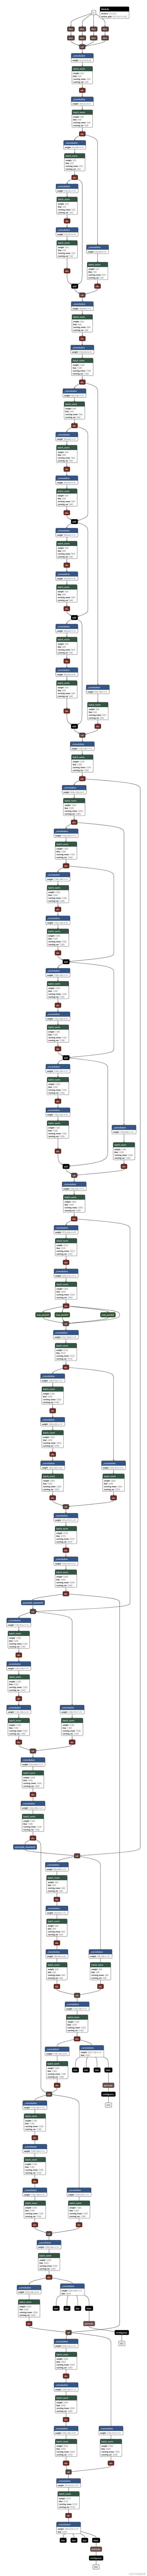 yolov5s-5.0网络模型结构图